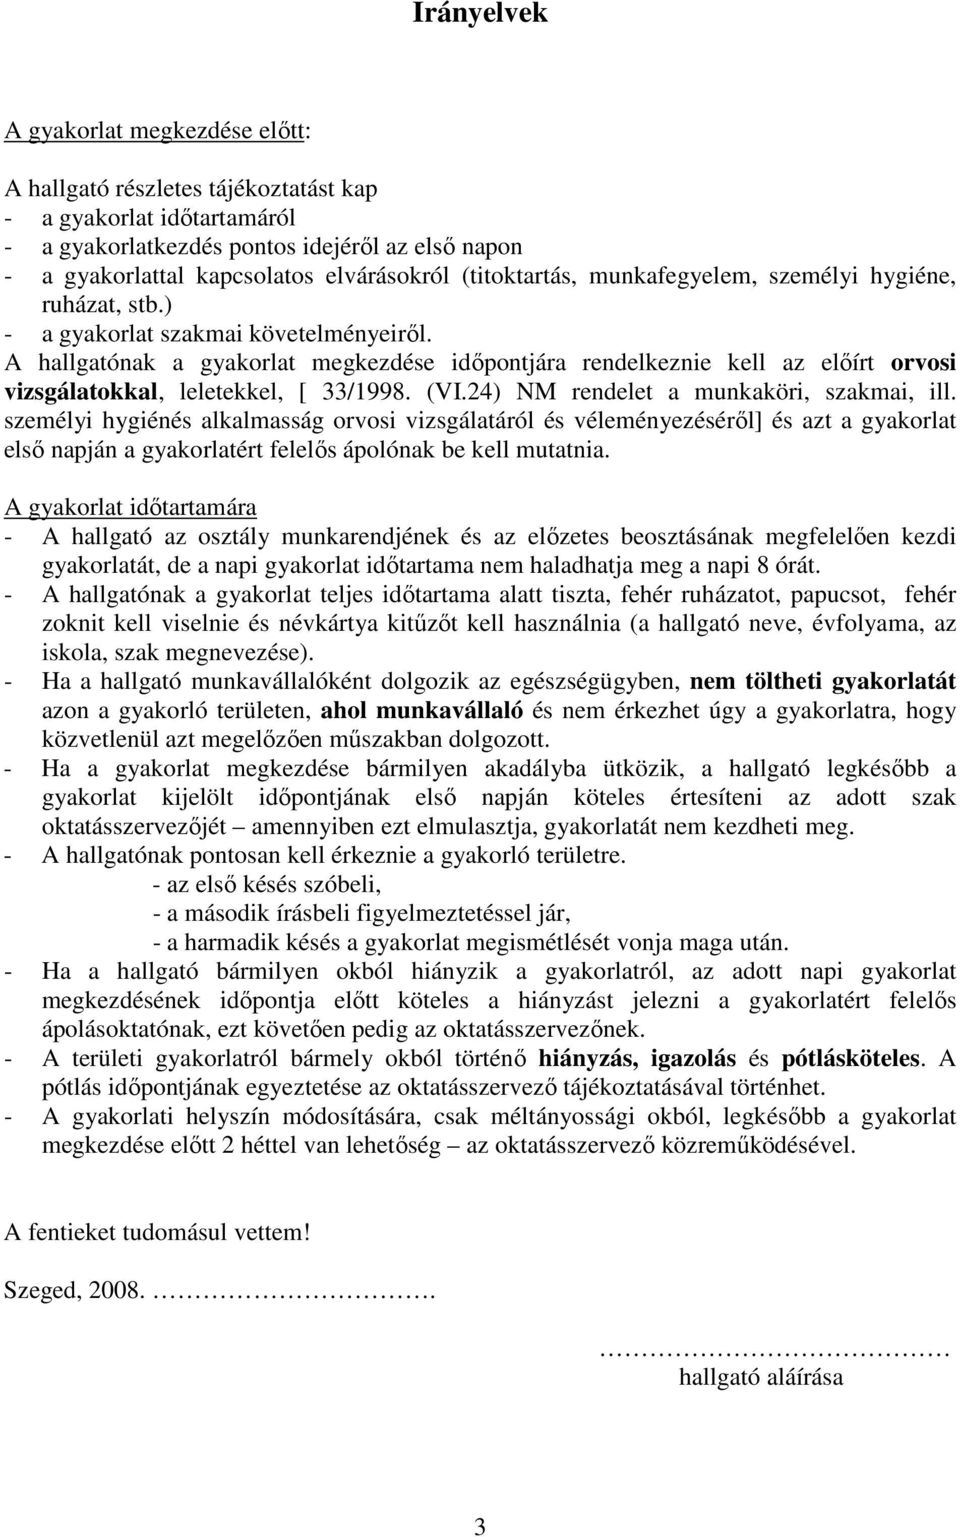 A hallgatónak a gyakorlat megkezdése idıpontjára rendelkeznie kell az elıírt orvosi vizsgálatokkal, leletekkel, [ 33/1998. (VI.24) NM rendelet a munkaköri, szakmai, ill.